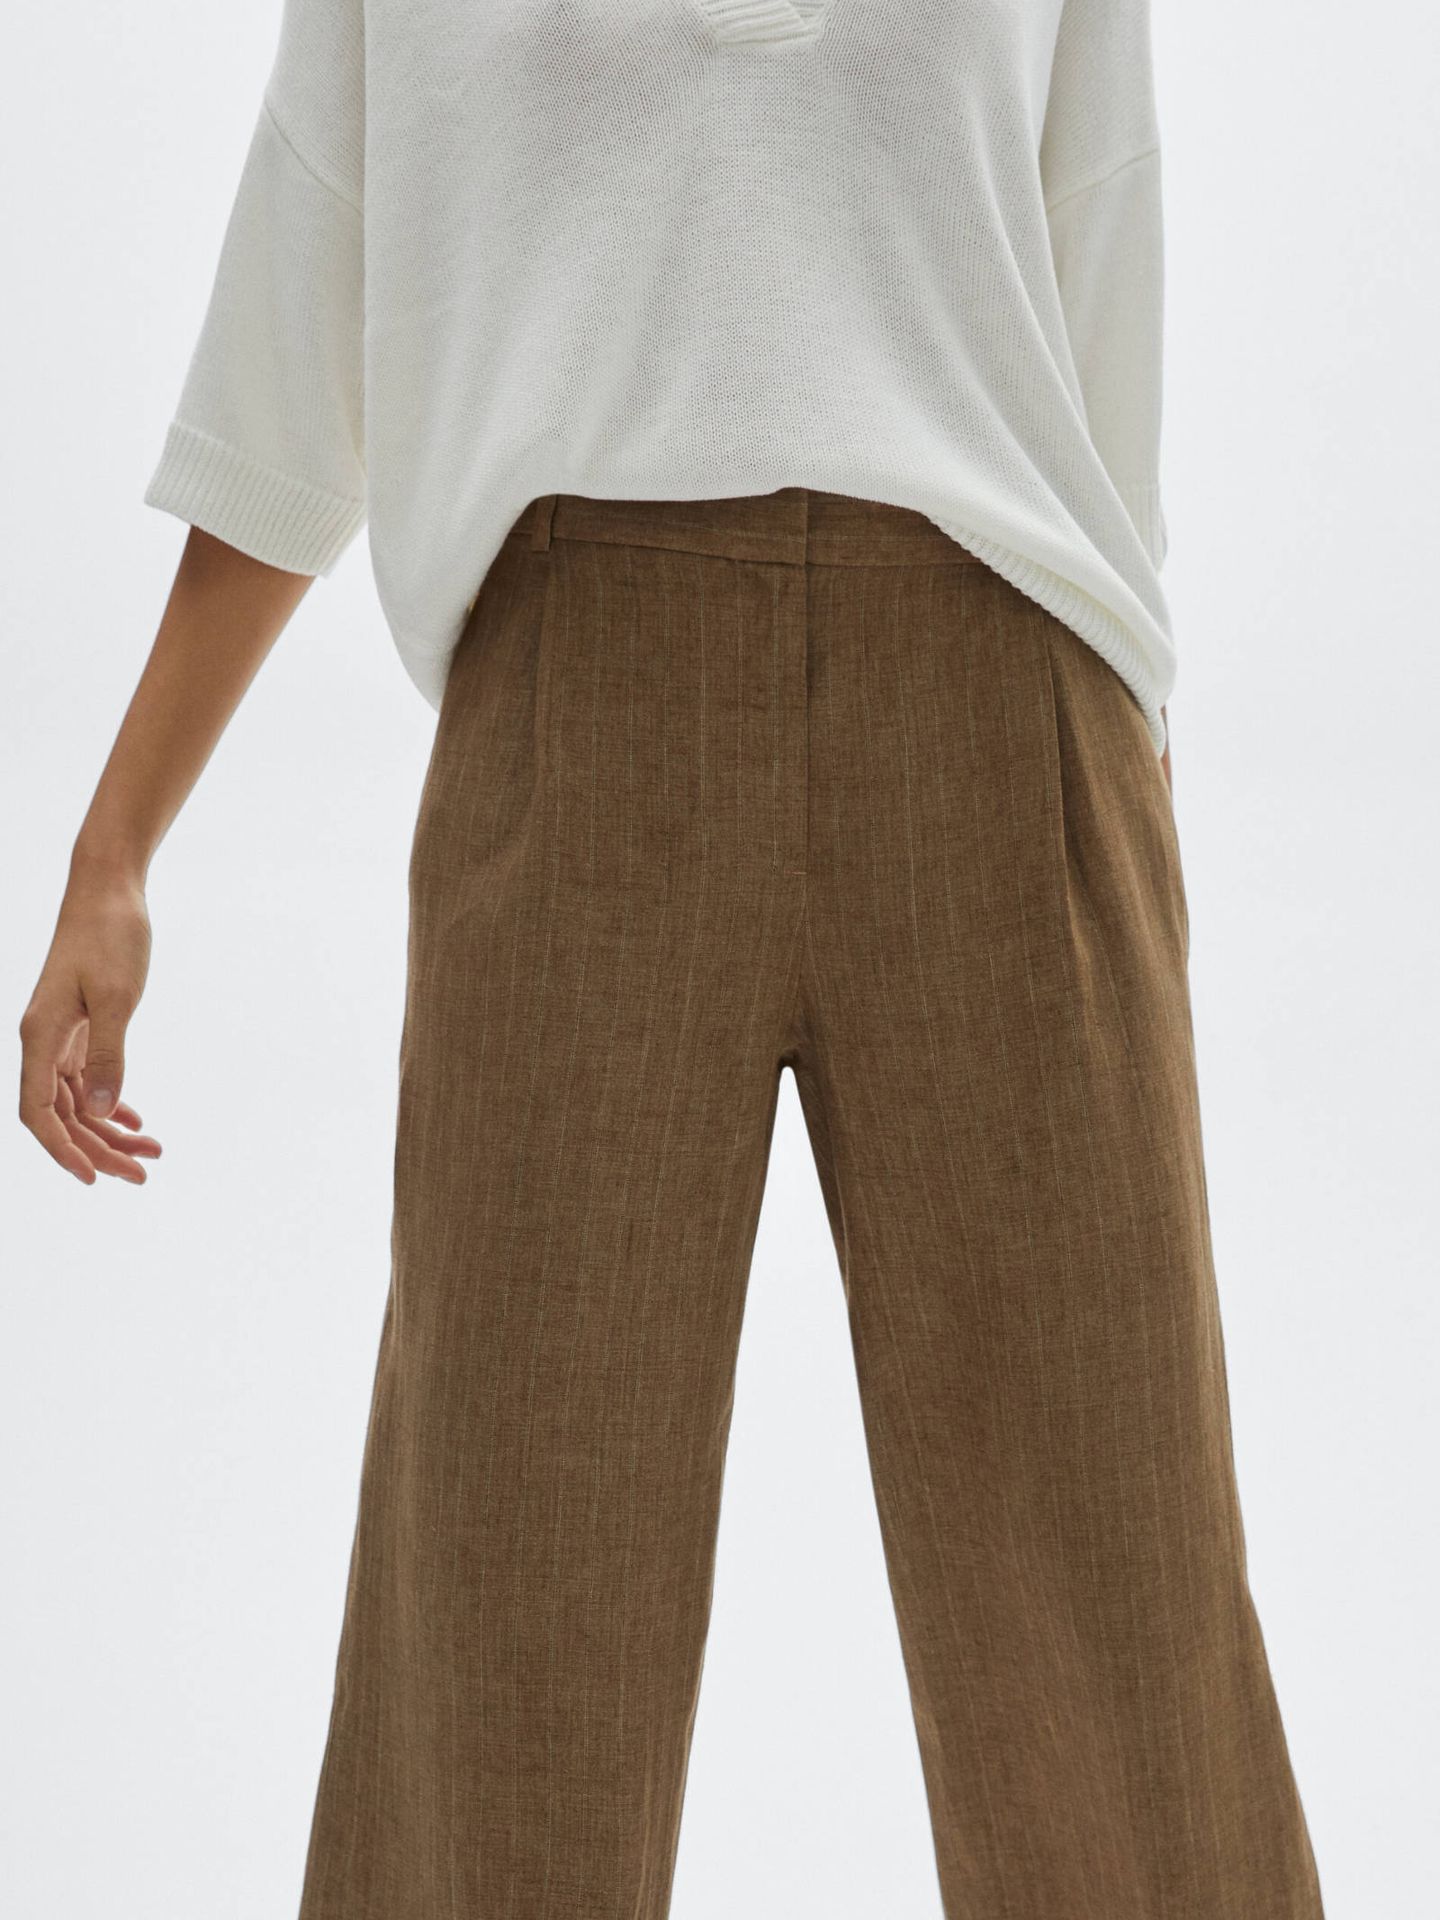 Pantalón de lino en color marrón de Massimo Dutti. (Cortesía)